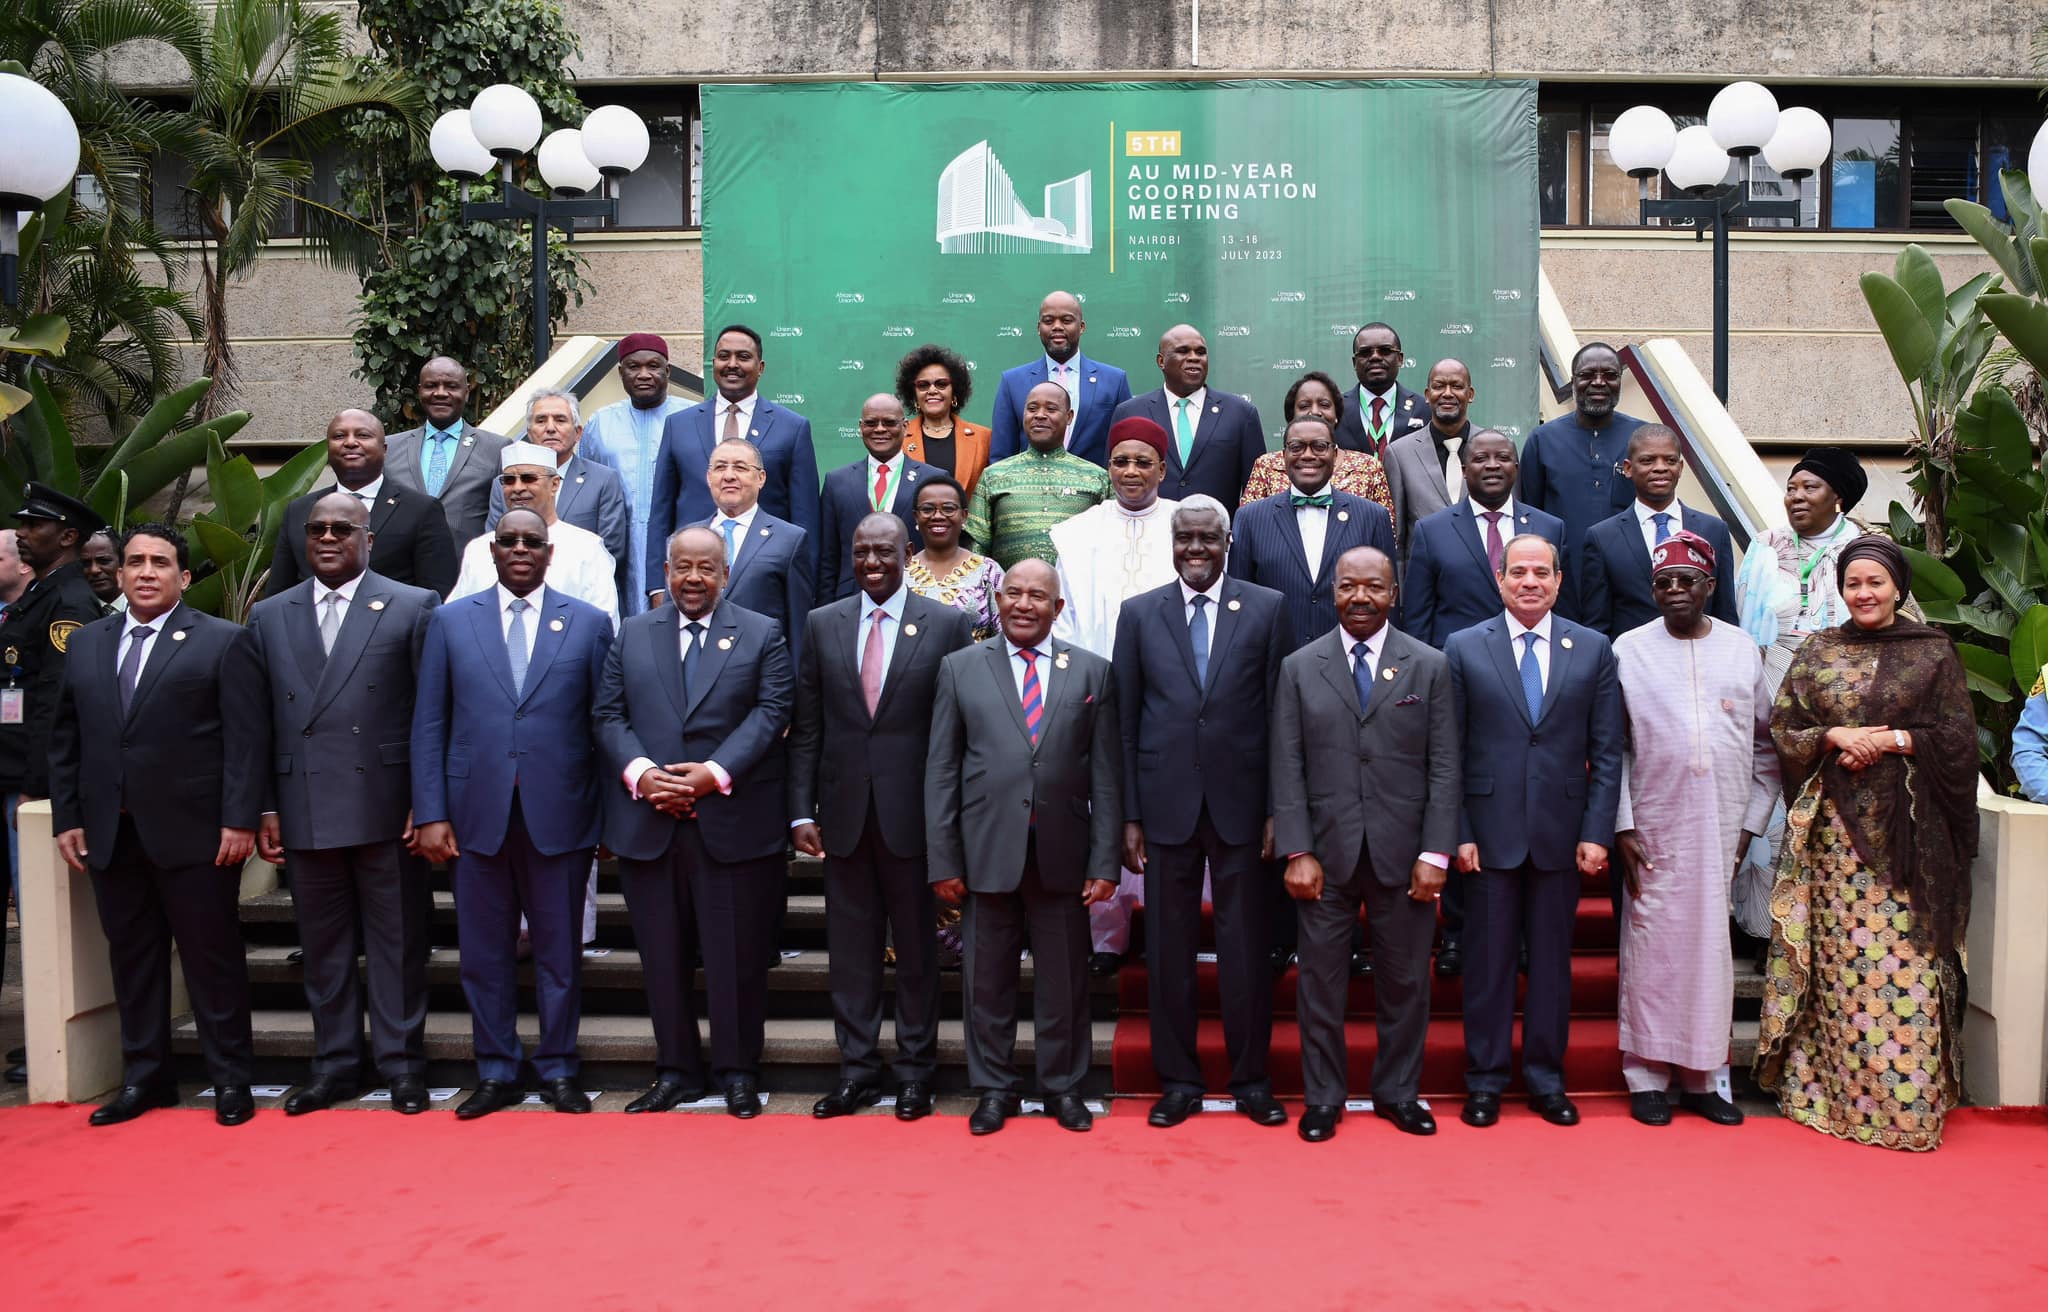  مشاركة الرئيس السيسي في قمة الاتحاد الإفريقي التنسيقية بنيروبي 